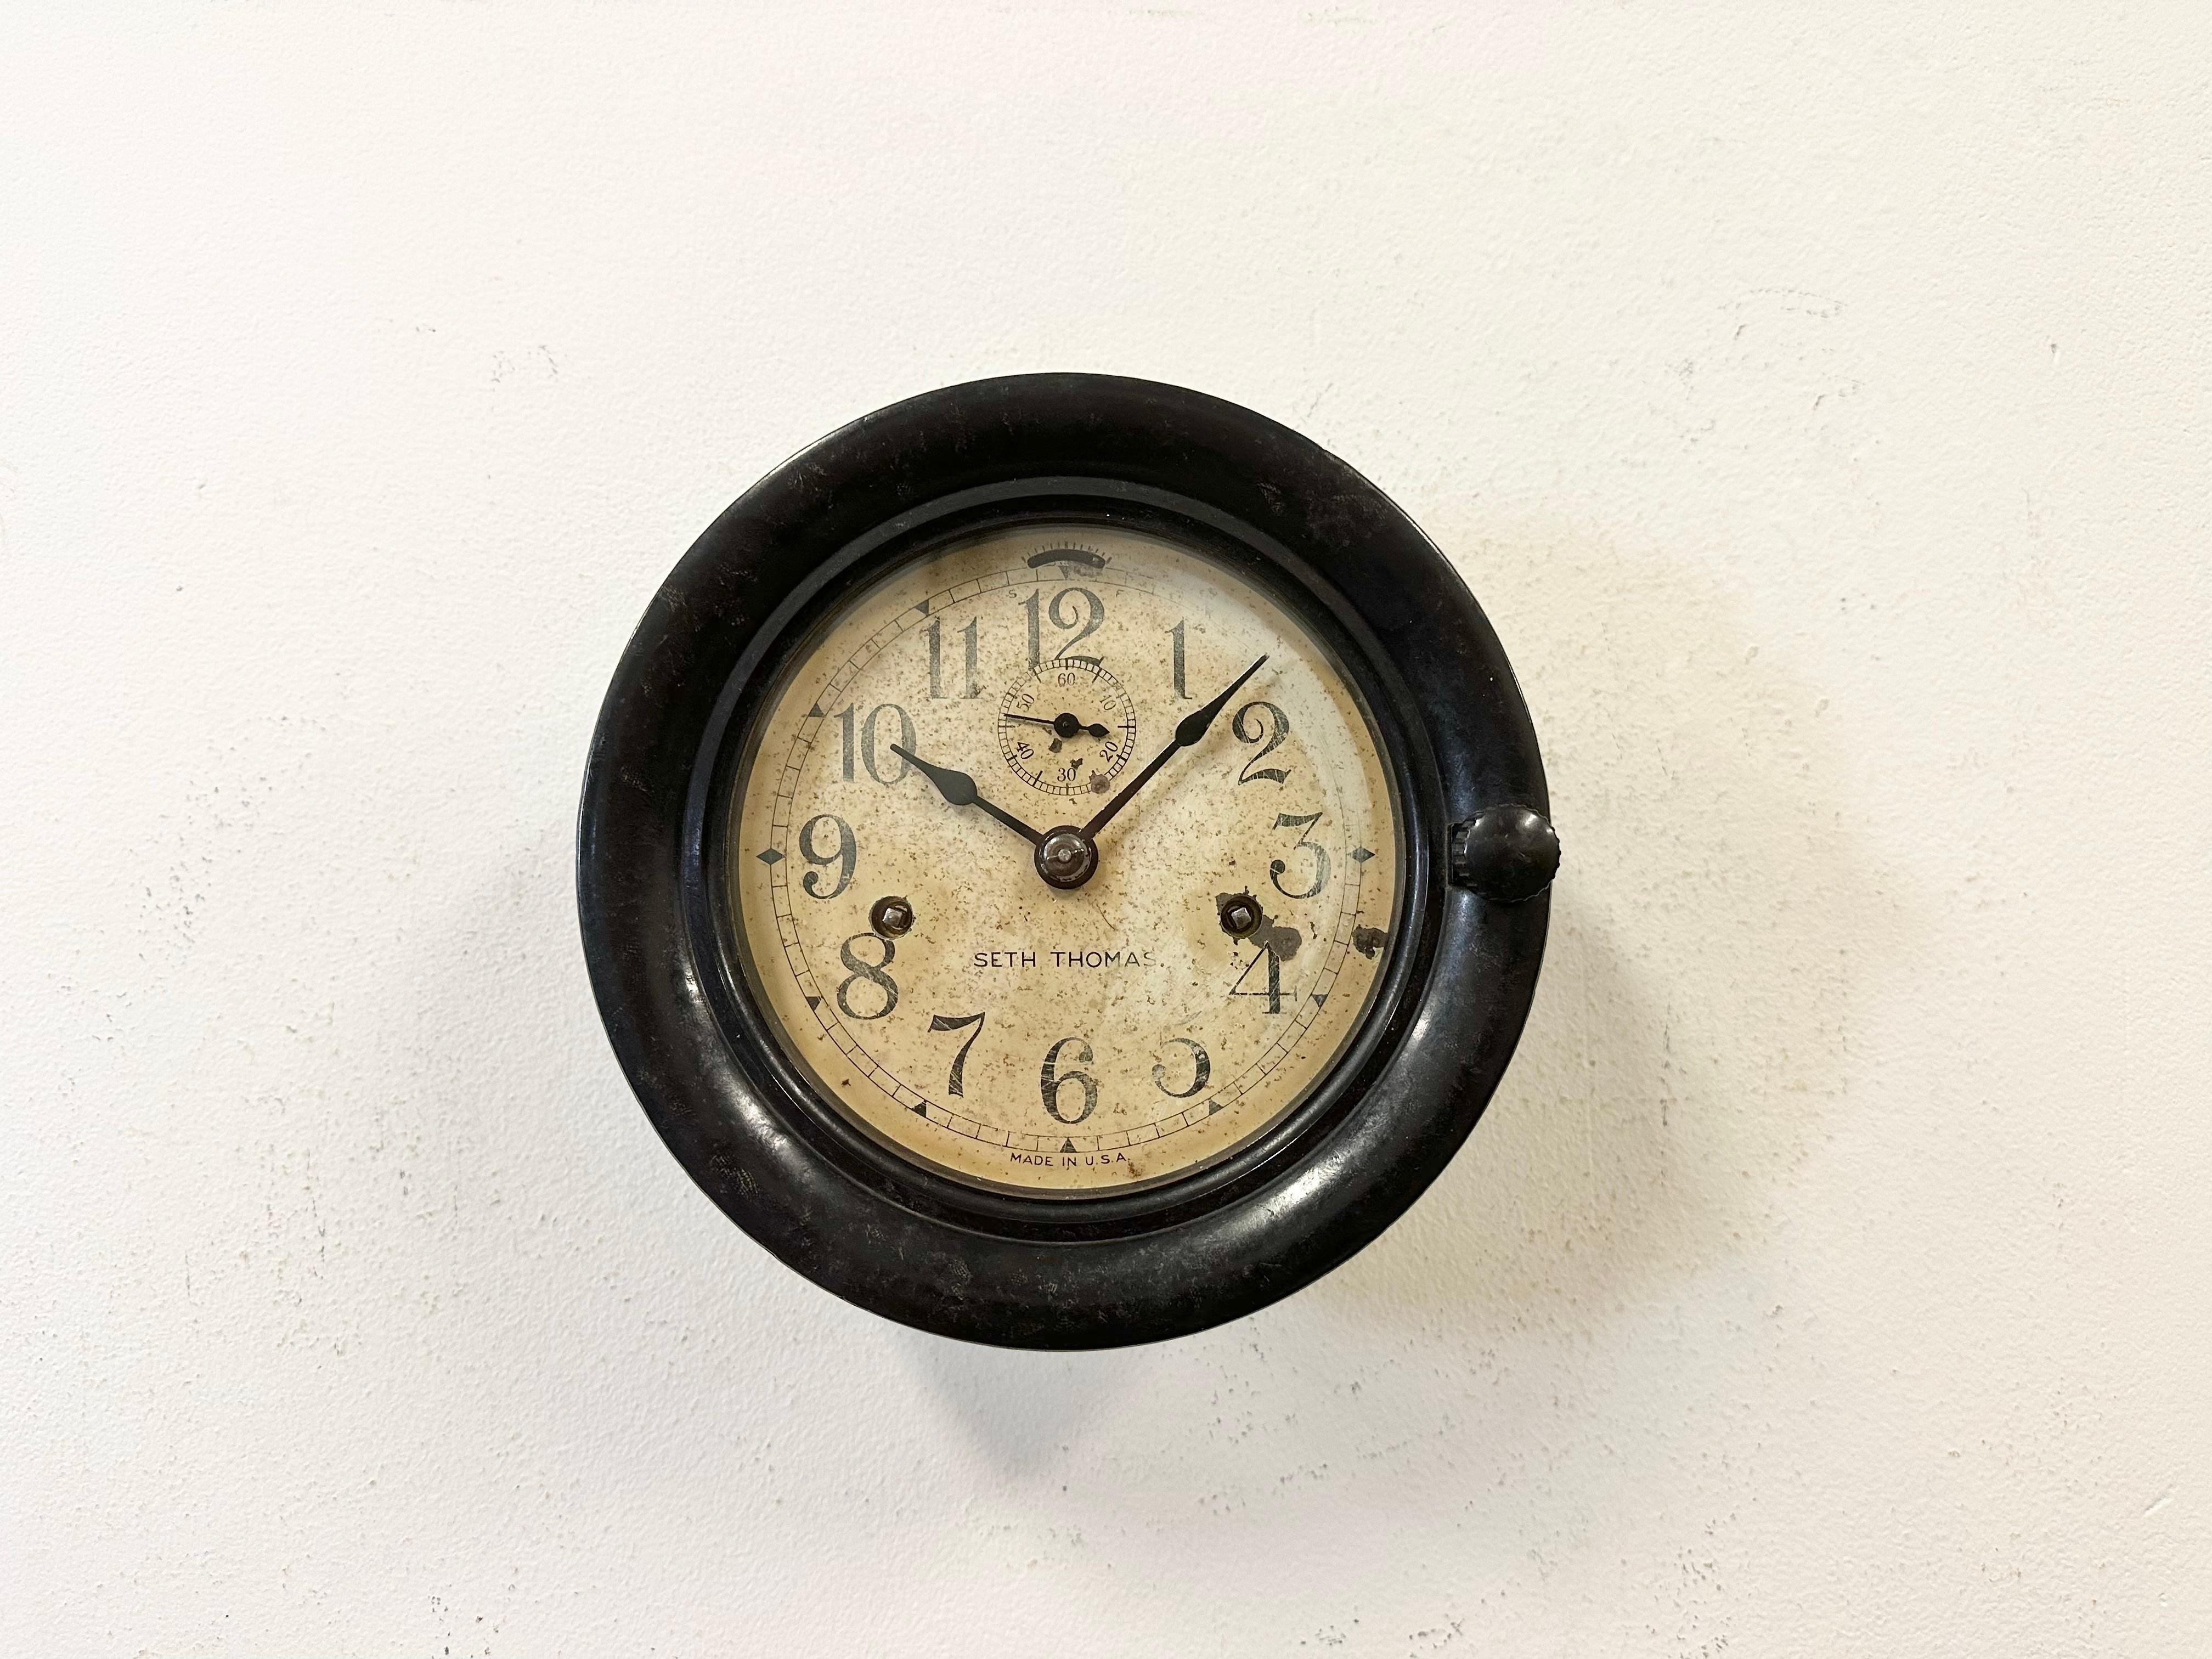 Vintage Bakelit-Wanduhr mit Schiffsaufzug, hergestellt von der Seth Thomas Clock Company in den Vereinigten Staaten in den 1950er Jahren, mit dunkelbraunem Bakelit-Gehäuse und Klarglasabdeckung. Die ursprüngliche mechanische Bewegung funktioniert